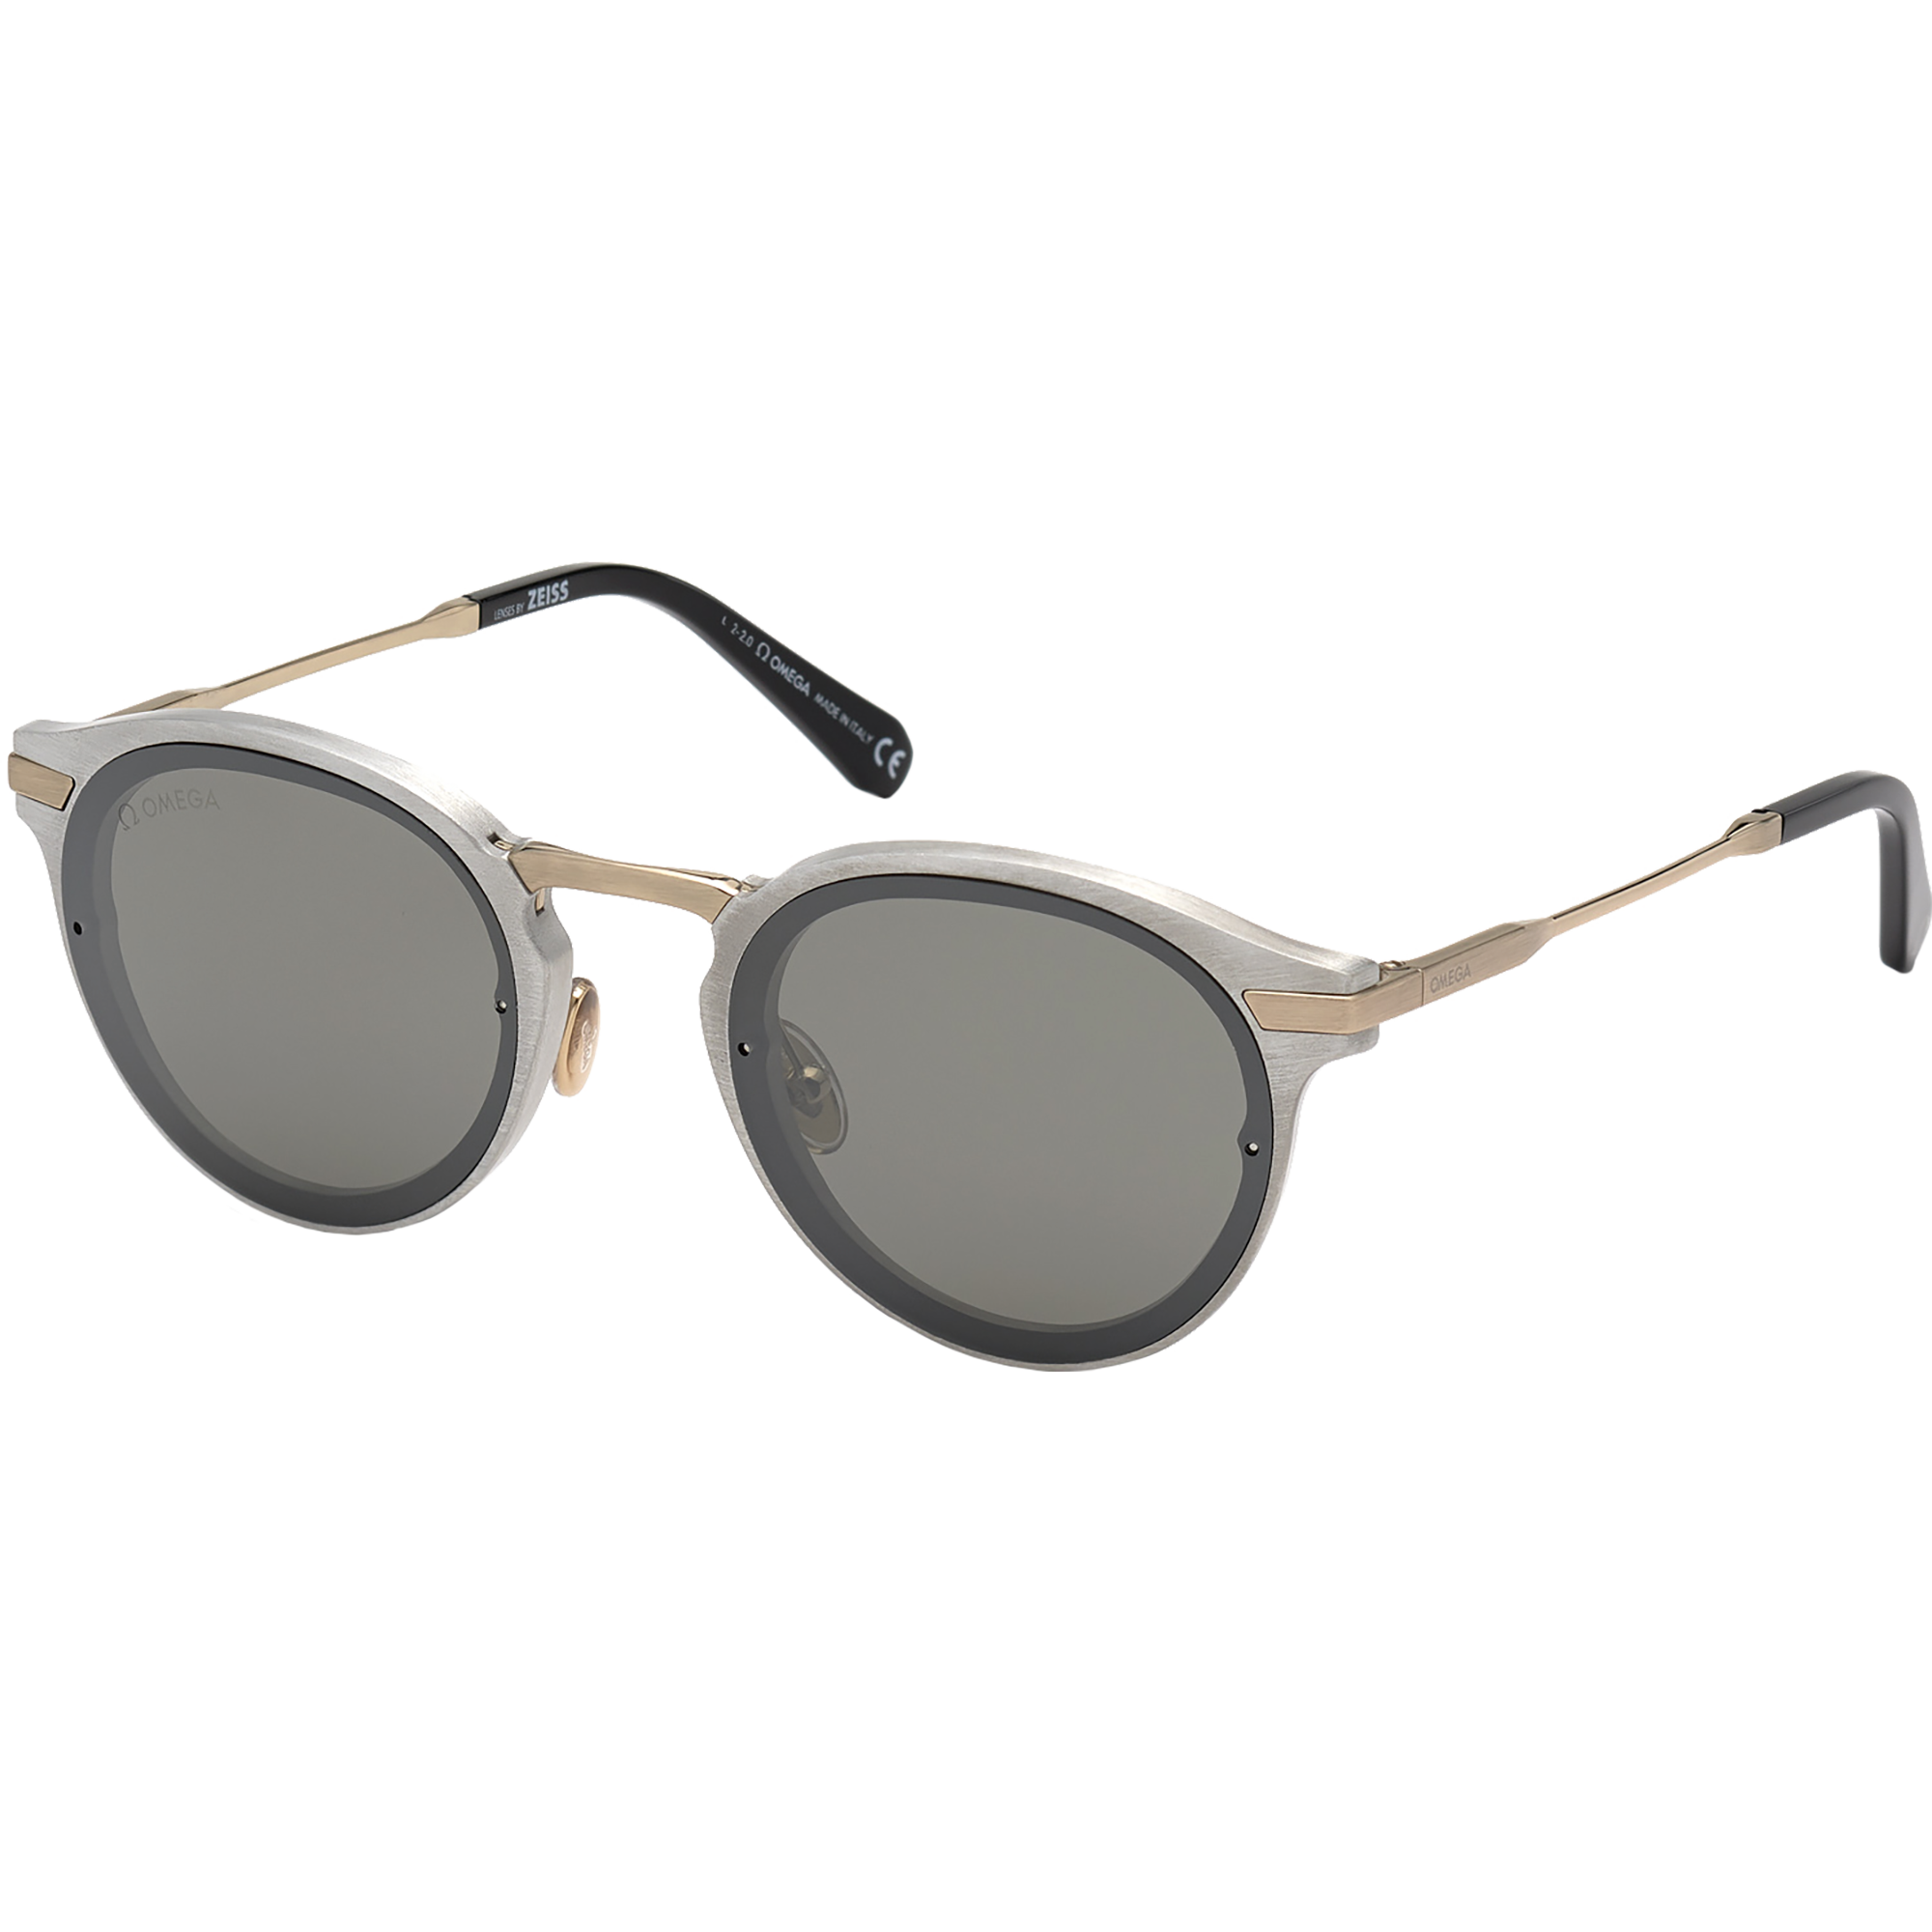 Солнцезащитные очки - Круглая форма, МУЖСКИЕ ОЧКИ - OM0029-H5416C